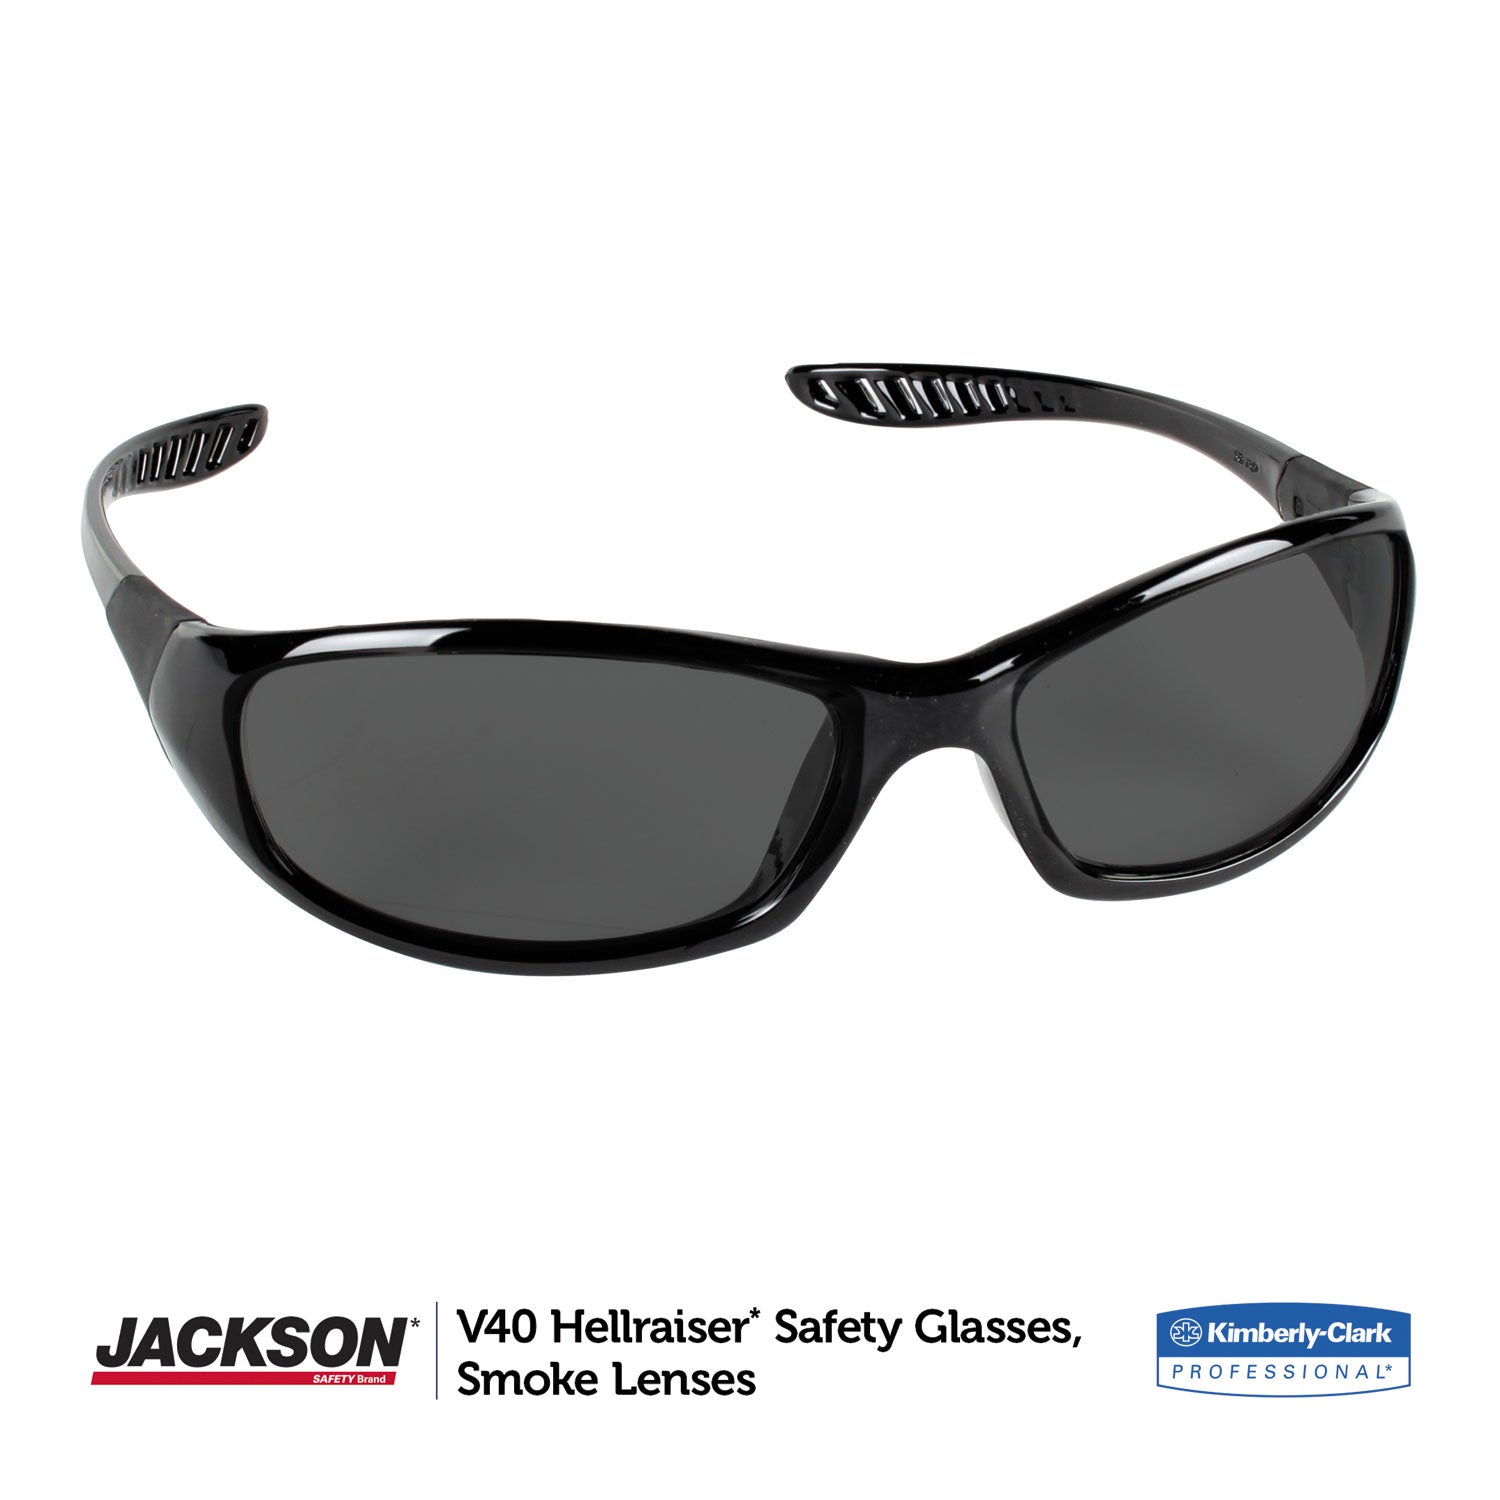 v40-hellraiser-safety-glasses-black-frame-smoke-lens_kcc25714 - 2